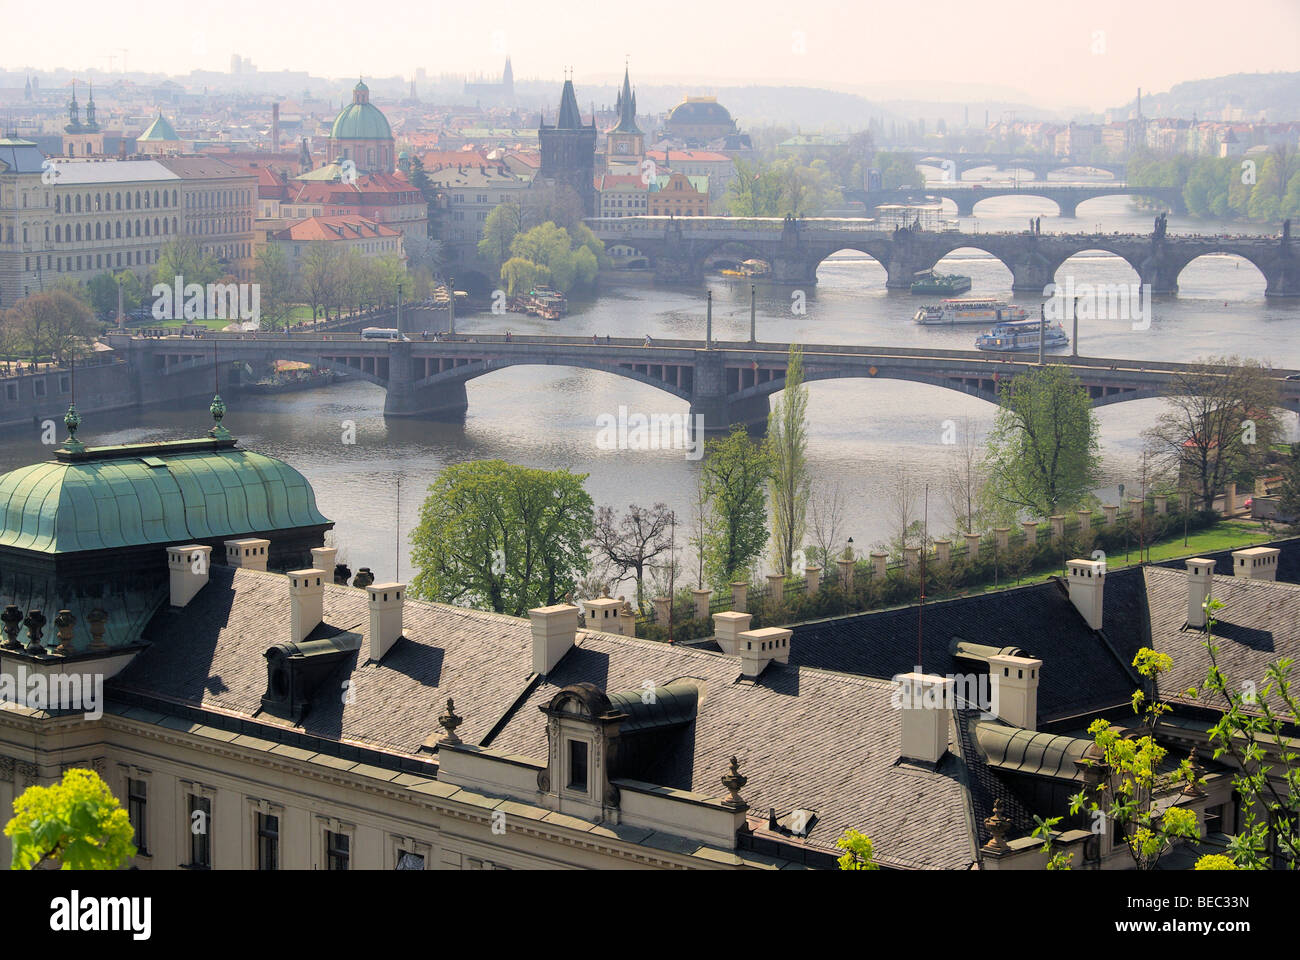 Prag Br so von Oben - Prager Brücken Luftbild 12 Stockfoto